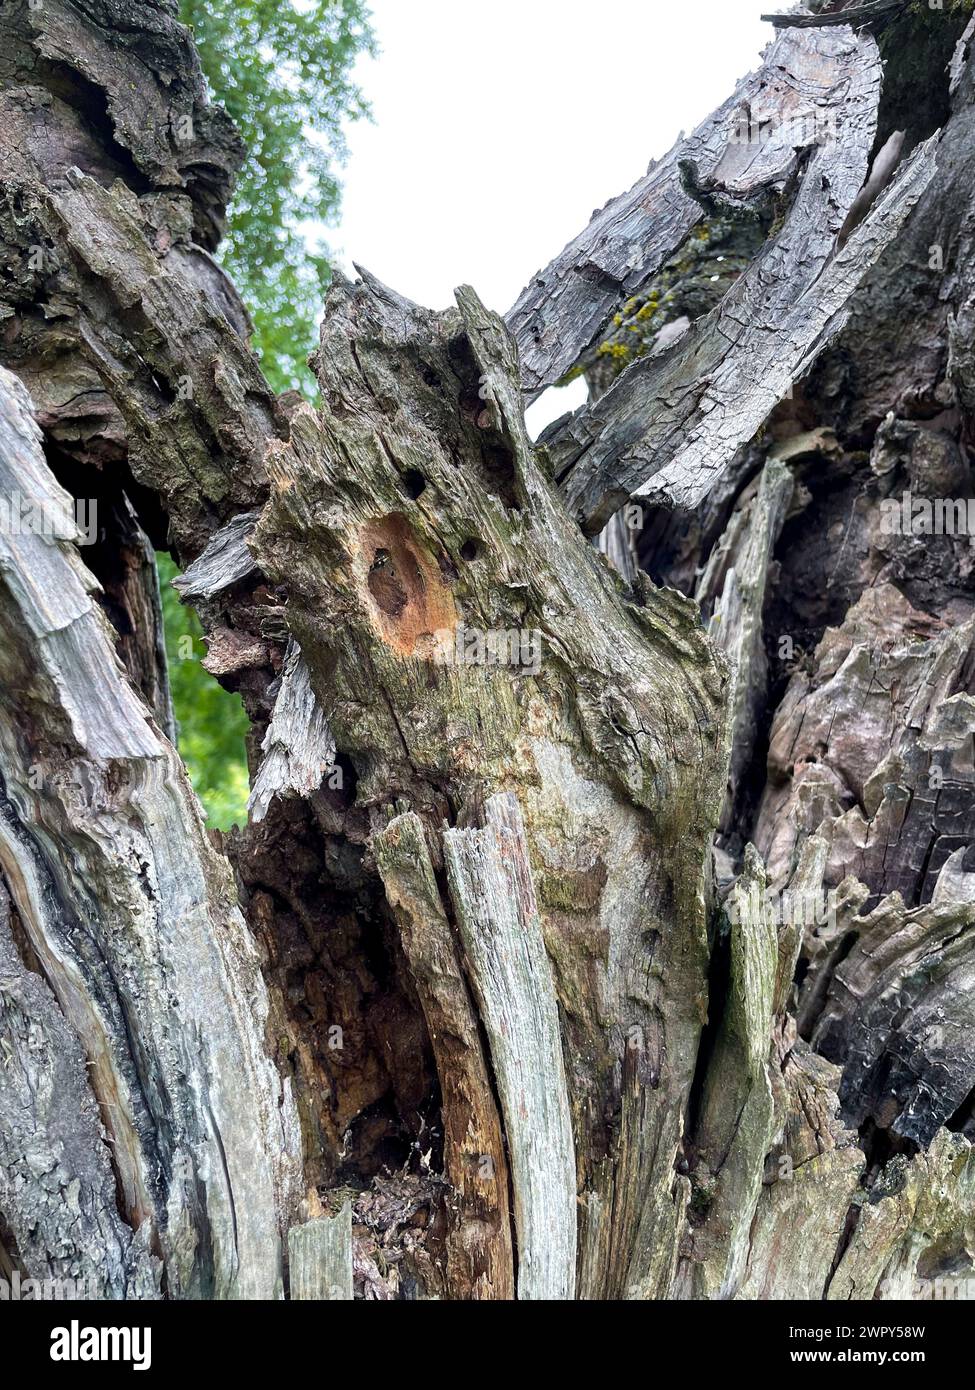 Höhle, Loch in einem alten knorrigen Baum, Zufluchtsort für Tiere Foto Stock